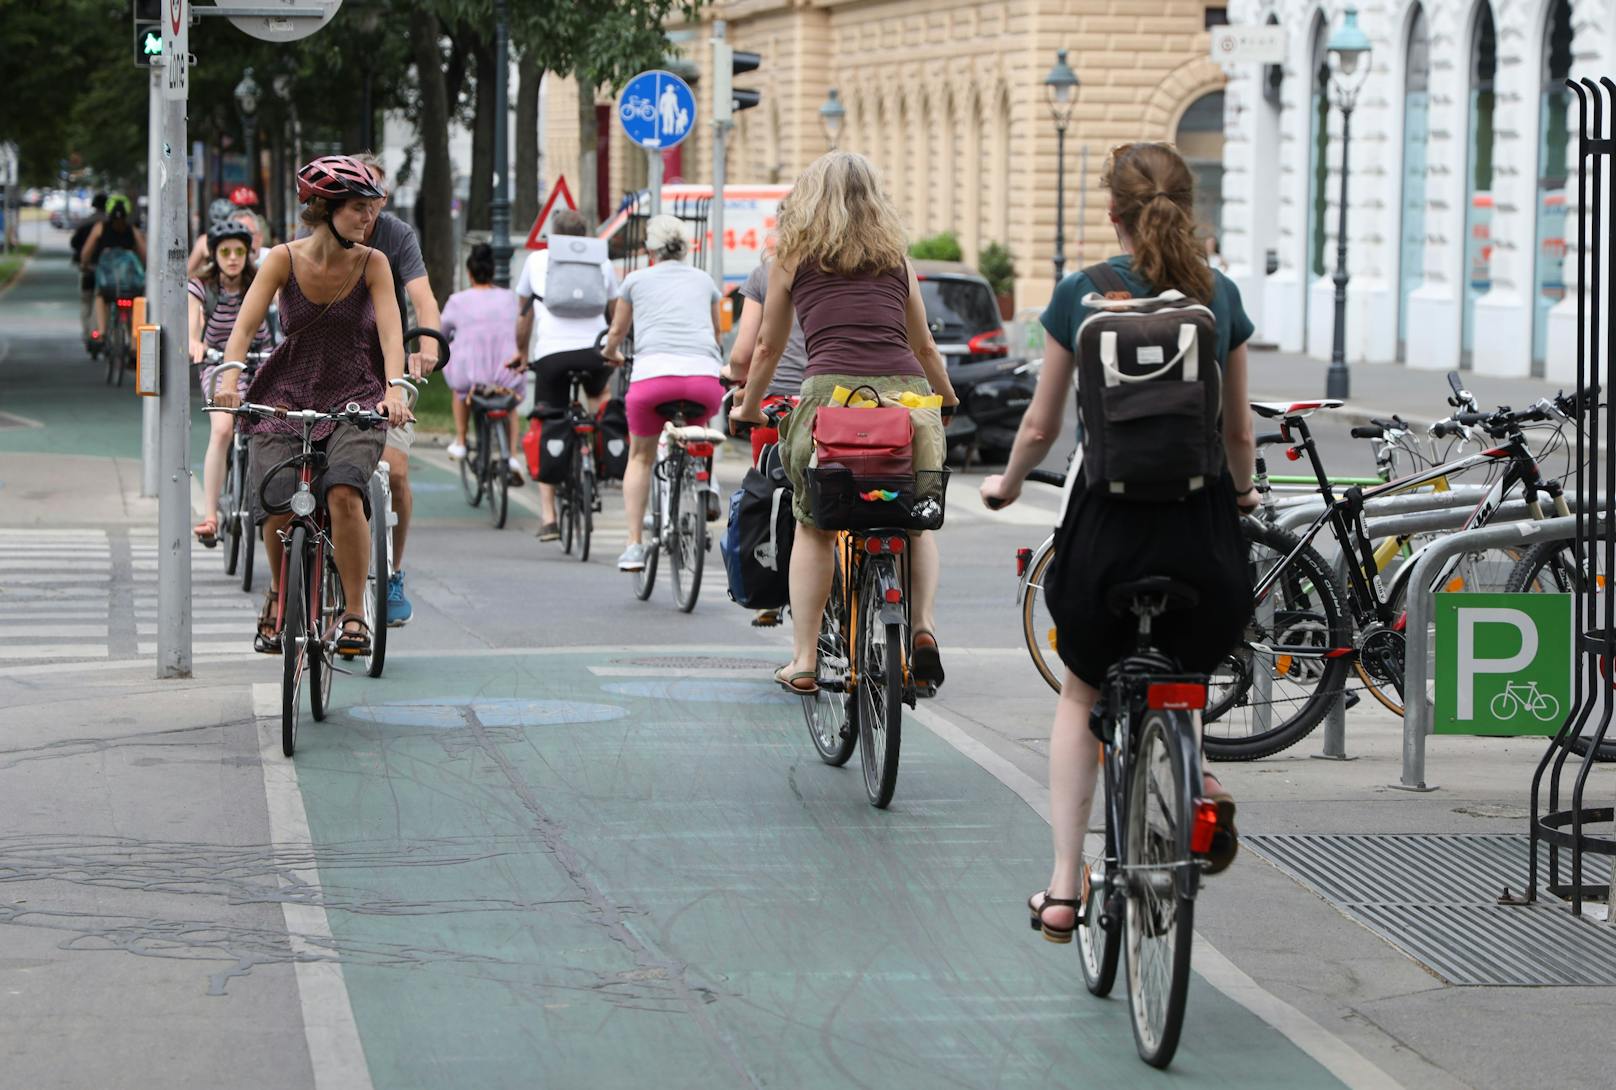 Das Radeln wird in Wien immer beliebter. Das nützt auch dem Klima: In Wien wird durch den Verkehr zwei Drittel weniger CO2 verursacht als im Bundesländerschnitt.